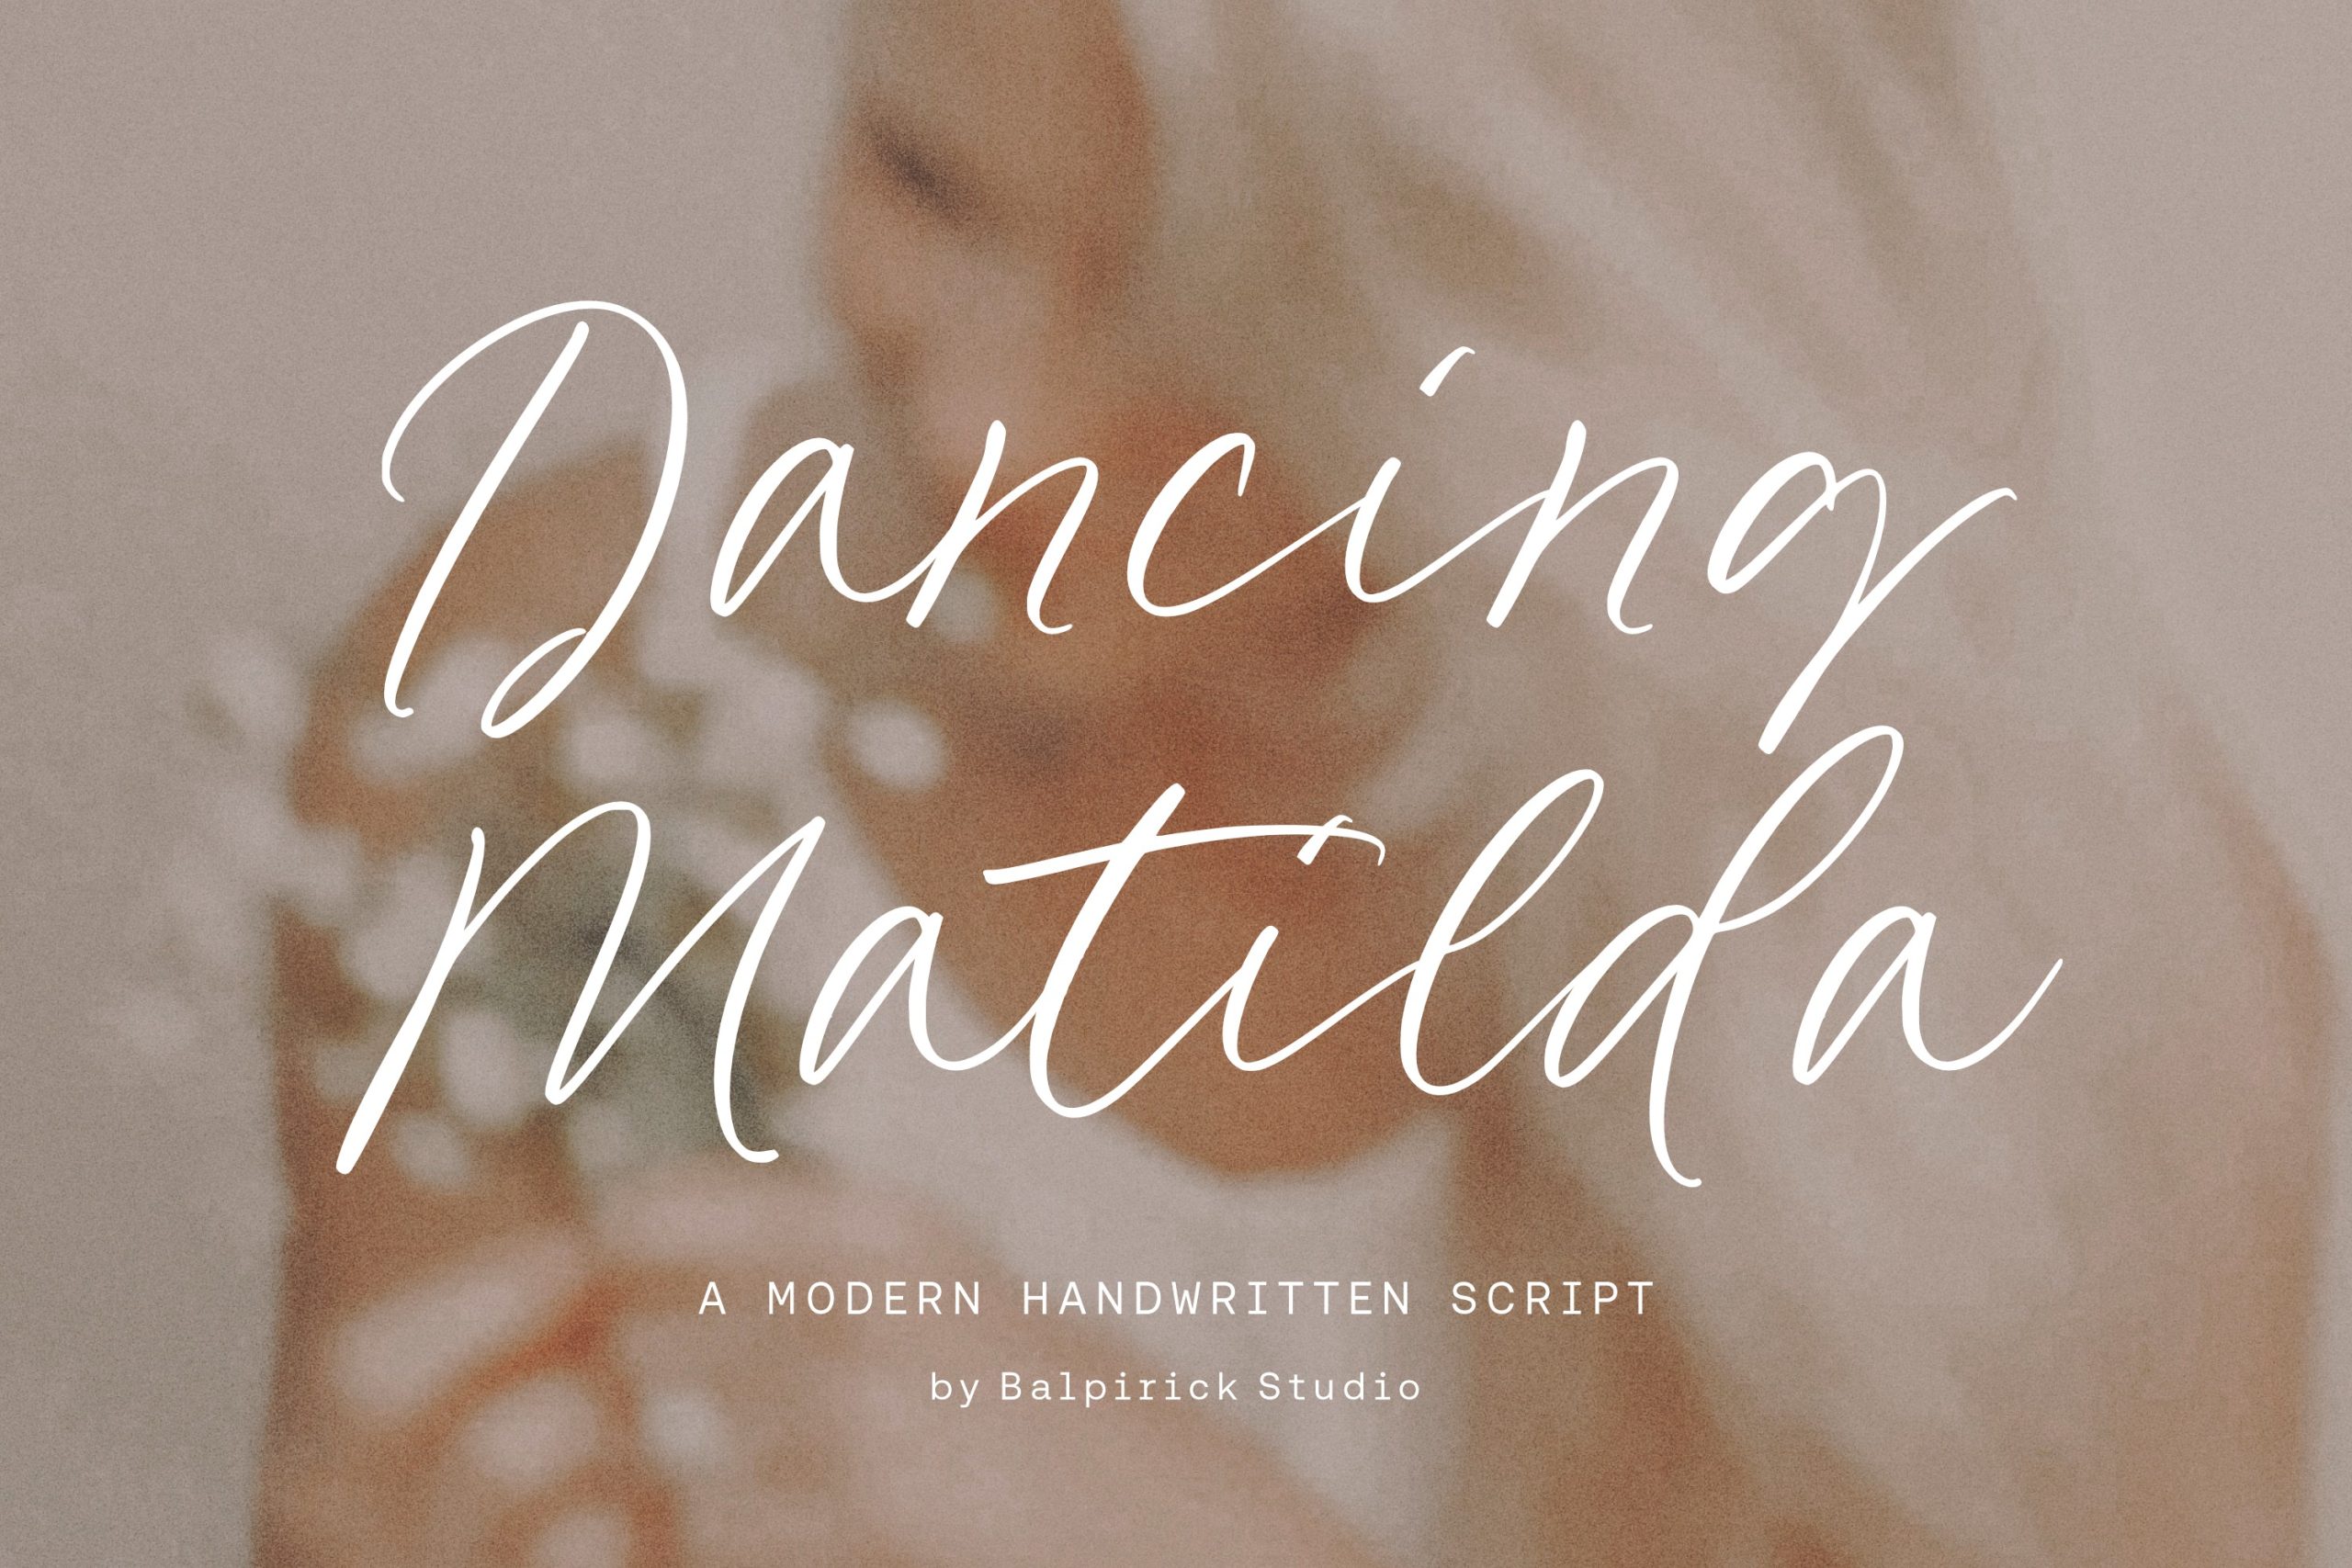 Dancing Matilda